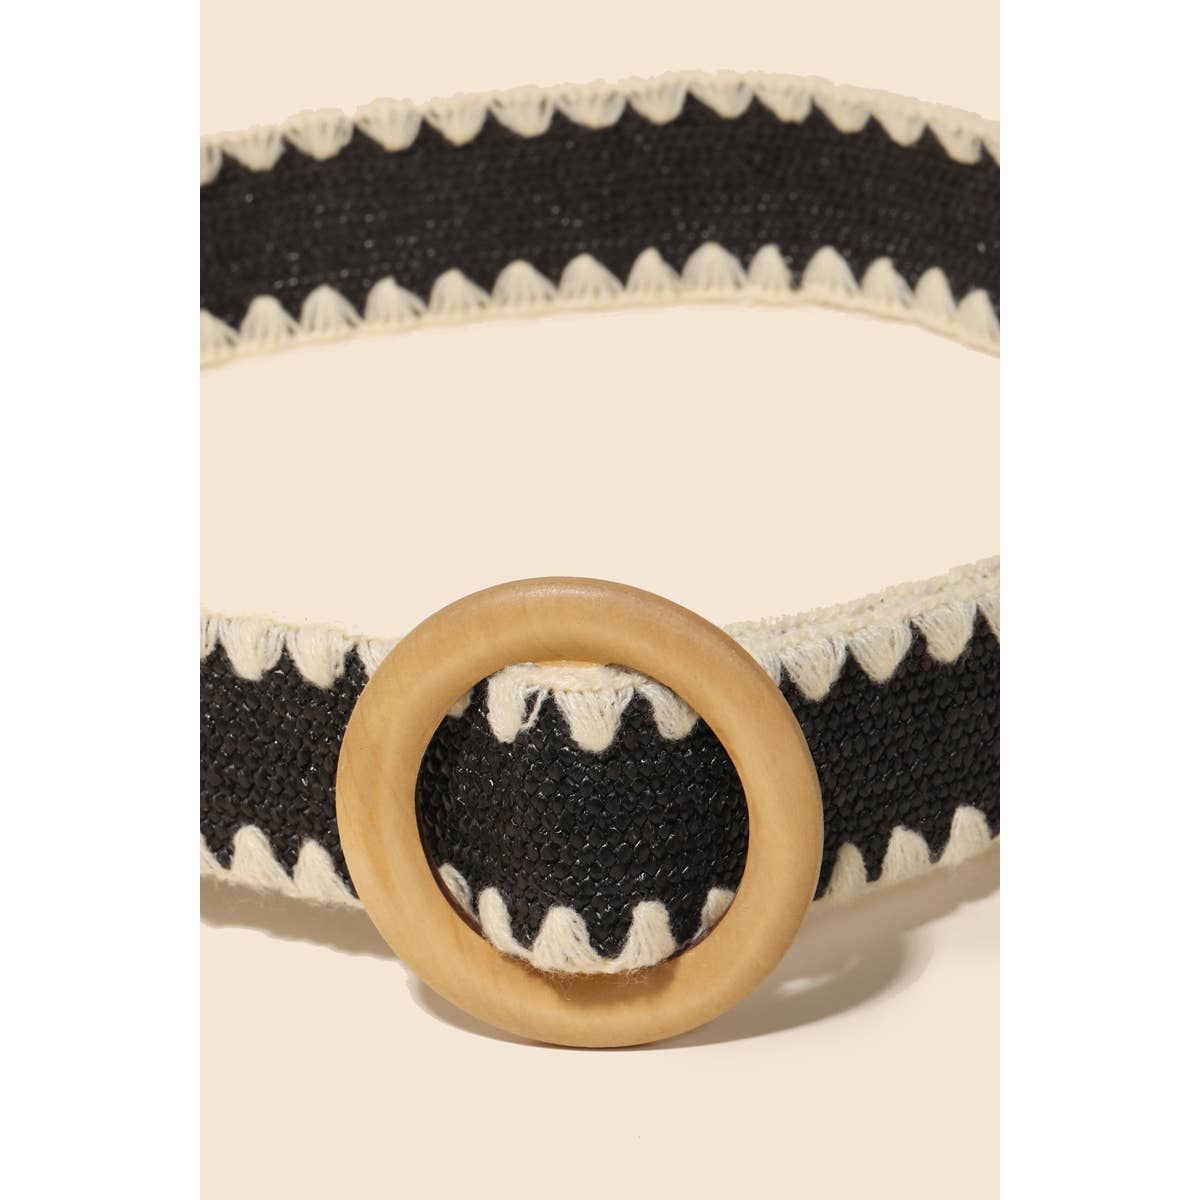 Wooden Round Buckle Braided Fashion Belt in Black